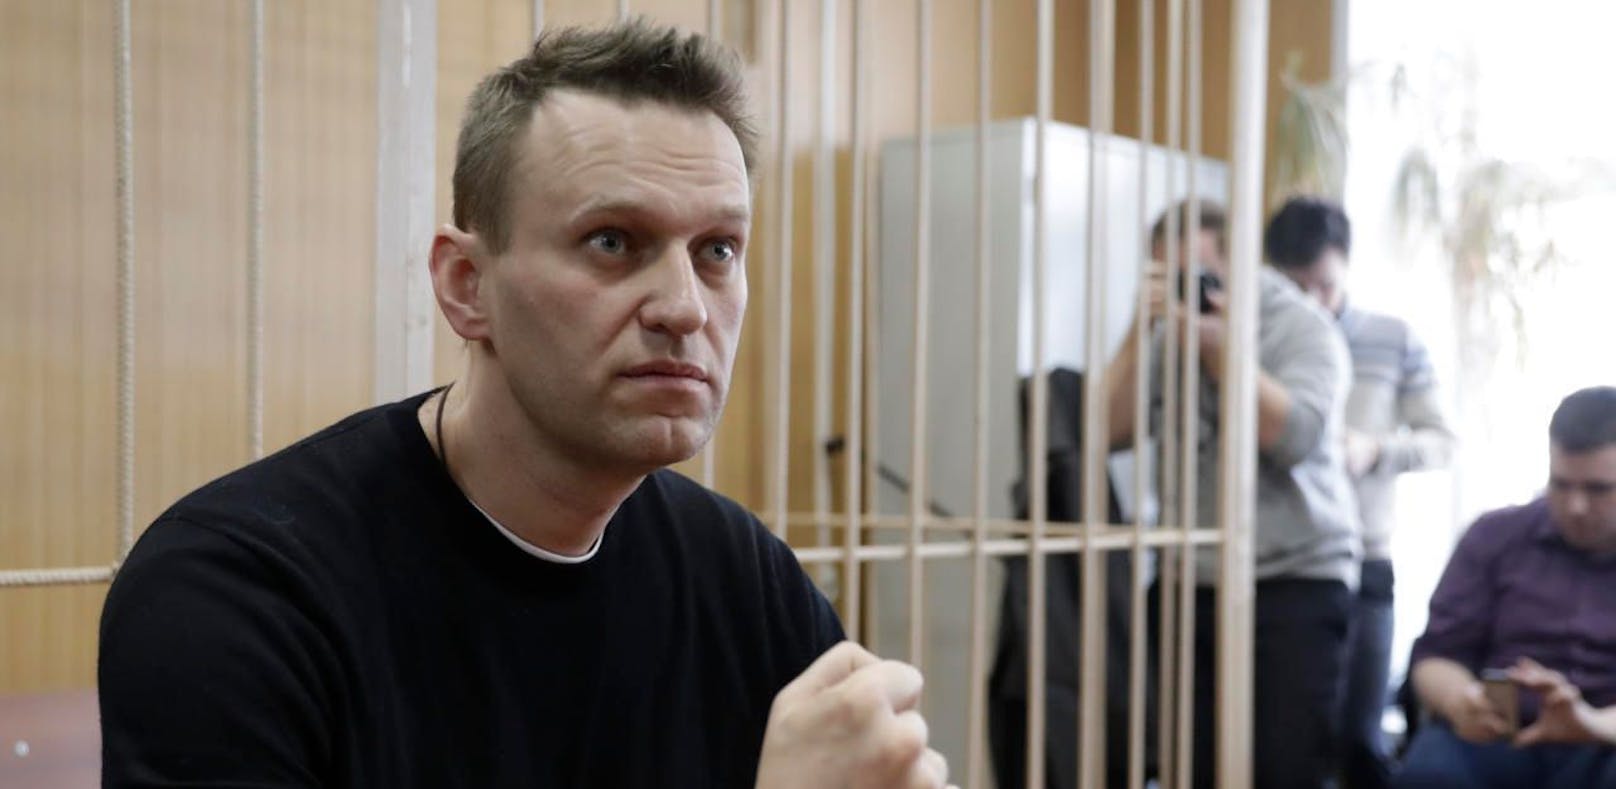 Putin-Gegner Nawalny in Moskau festgenommen